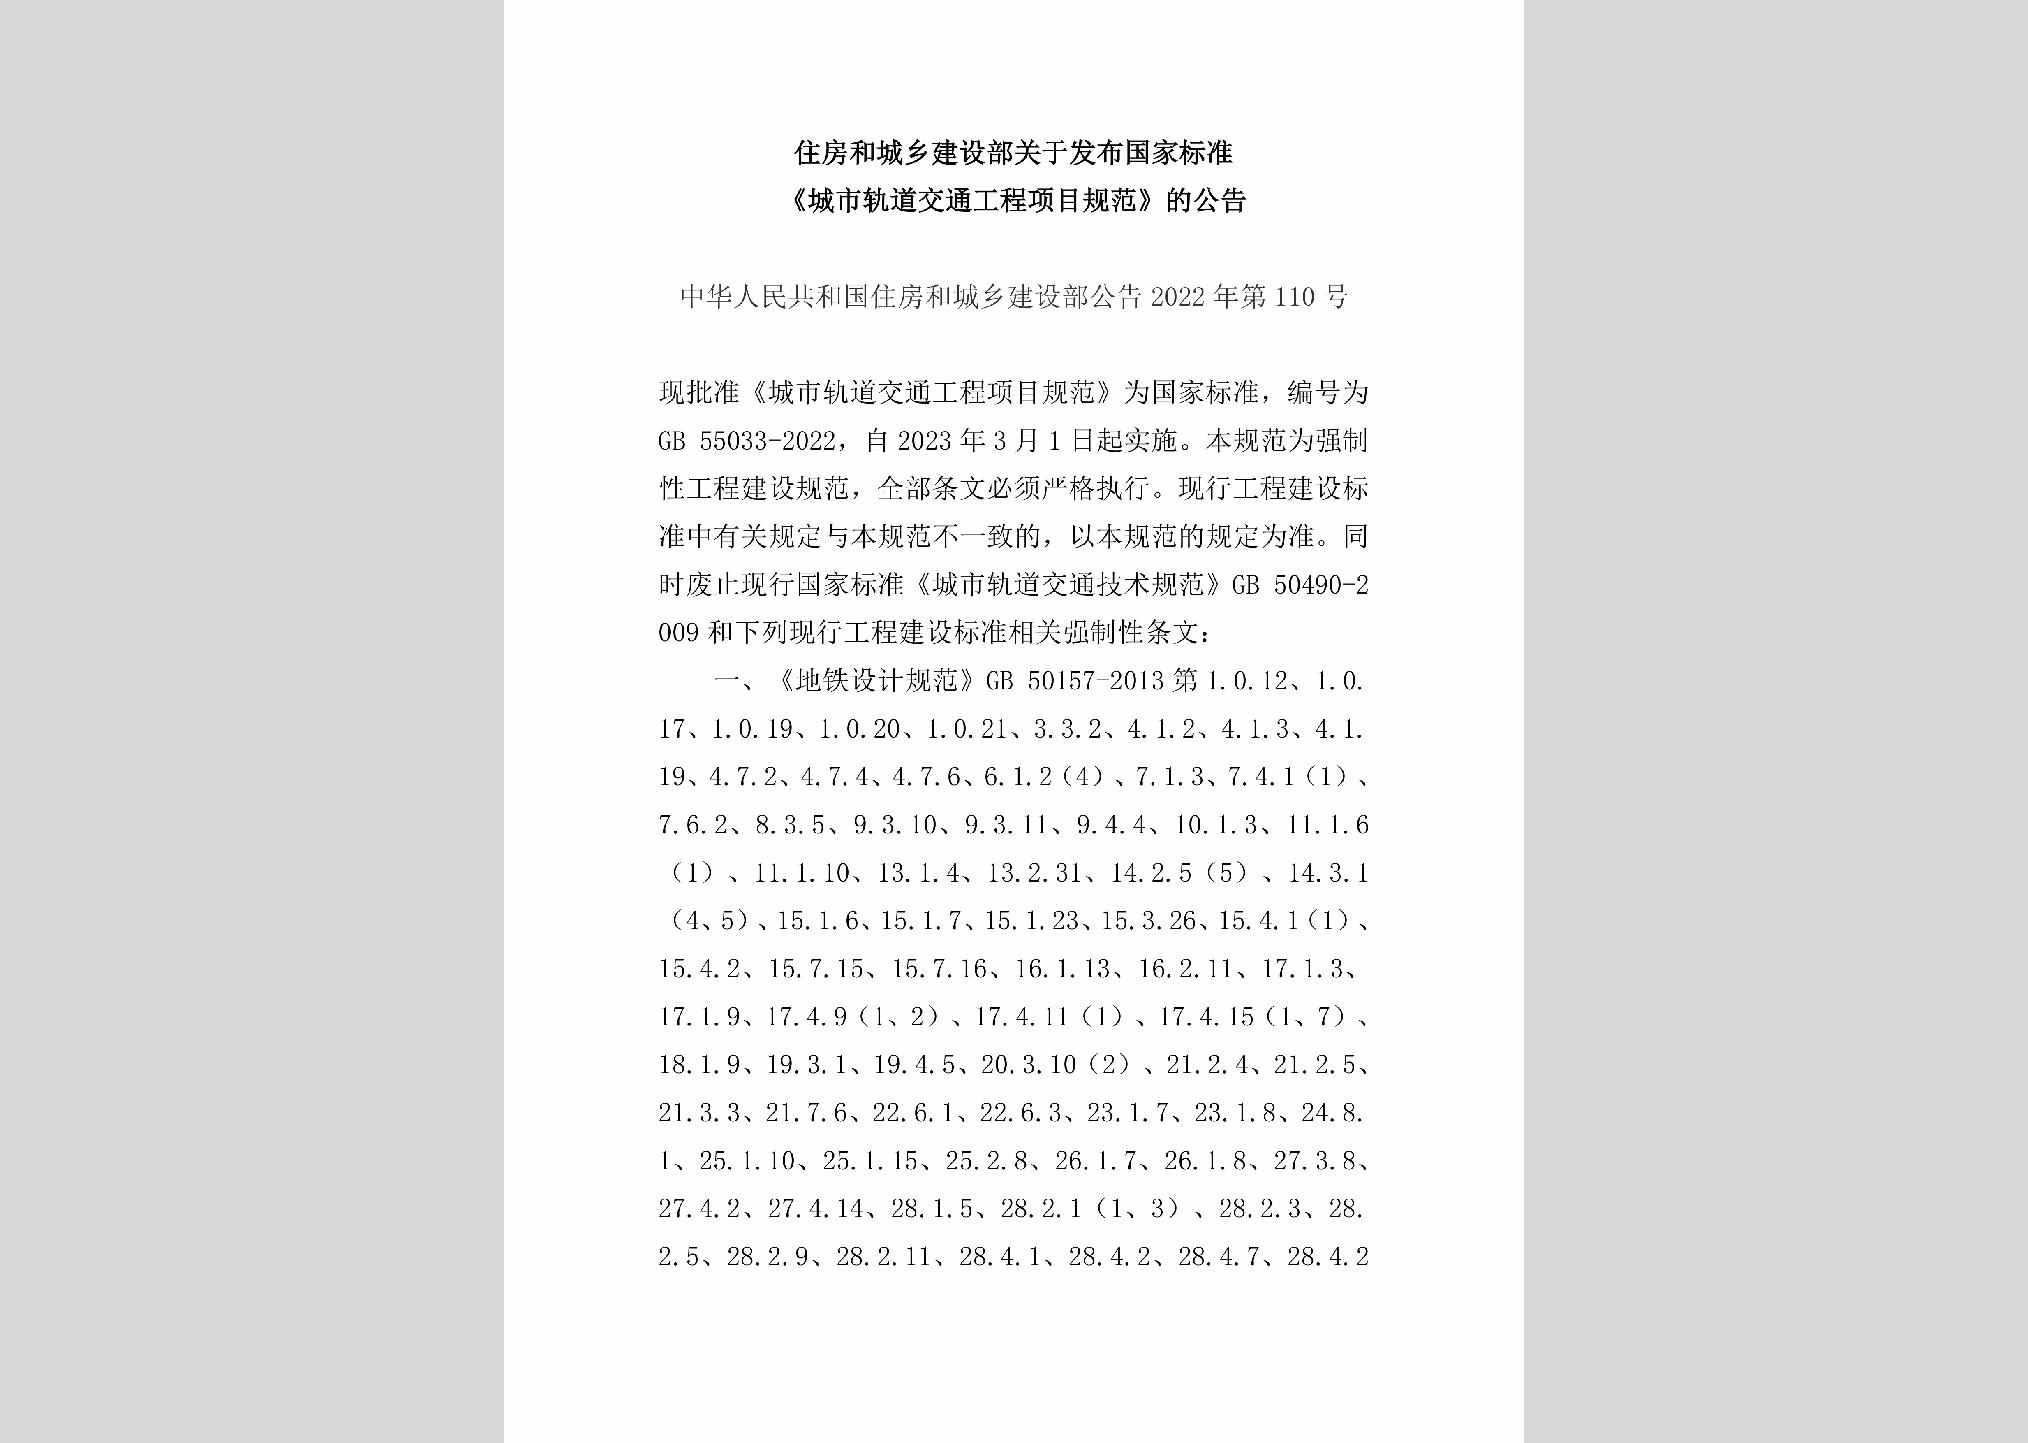 中华人民共和国住房和城乡建设部公告2022年第110号：住房和城乡建设部关于发布国家标准《城市轨道交通工程项目规范》的公告